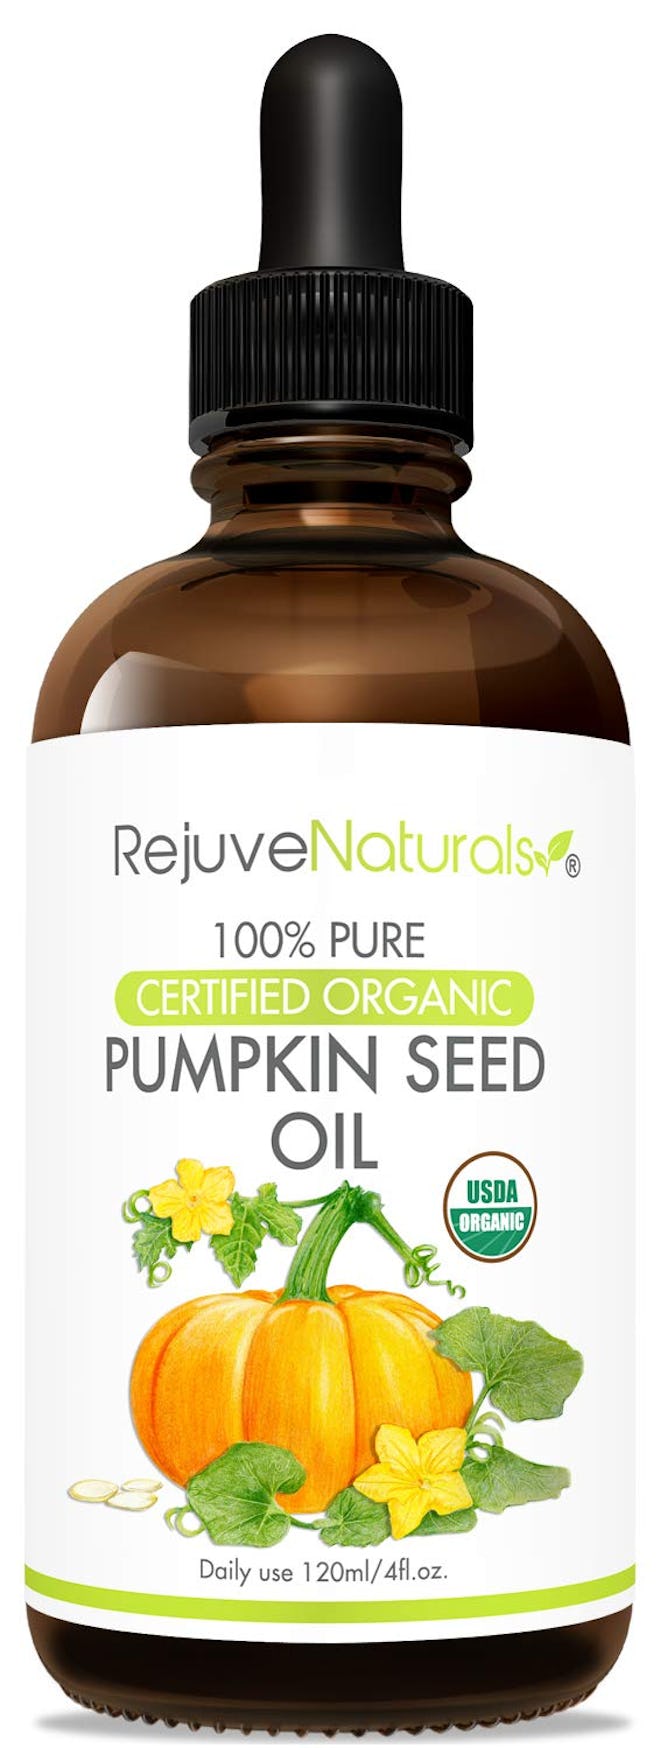 RejuveNaturals 100% Pure Certified Organic Pumpkin Seed Oil